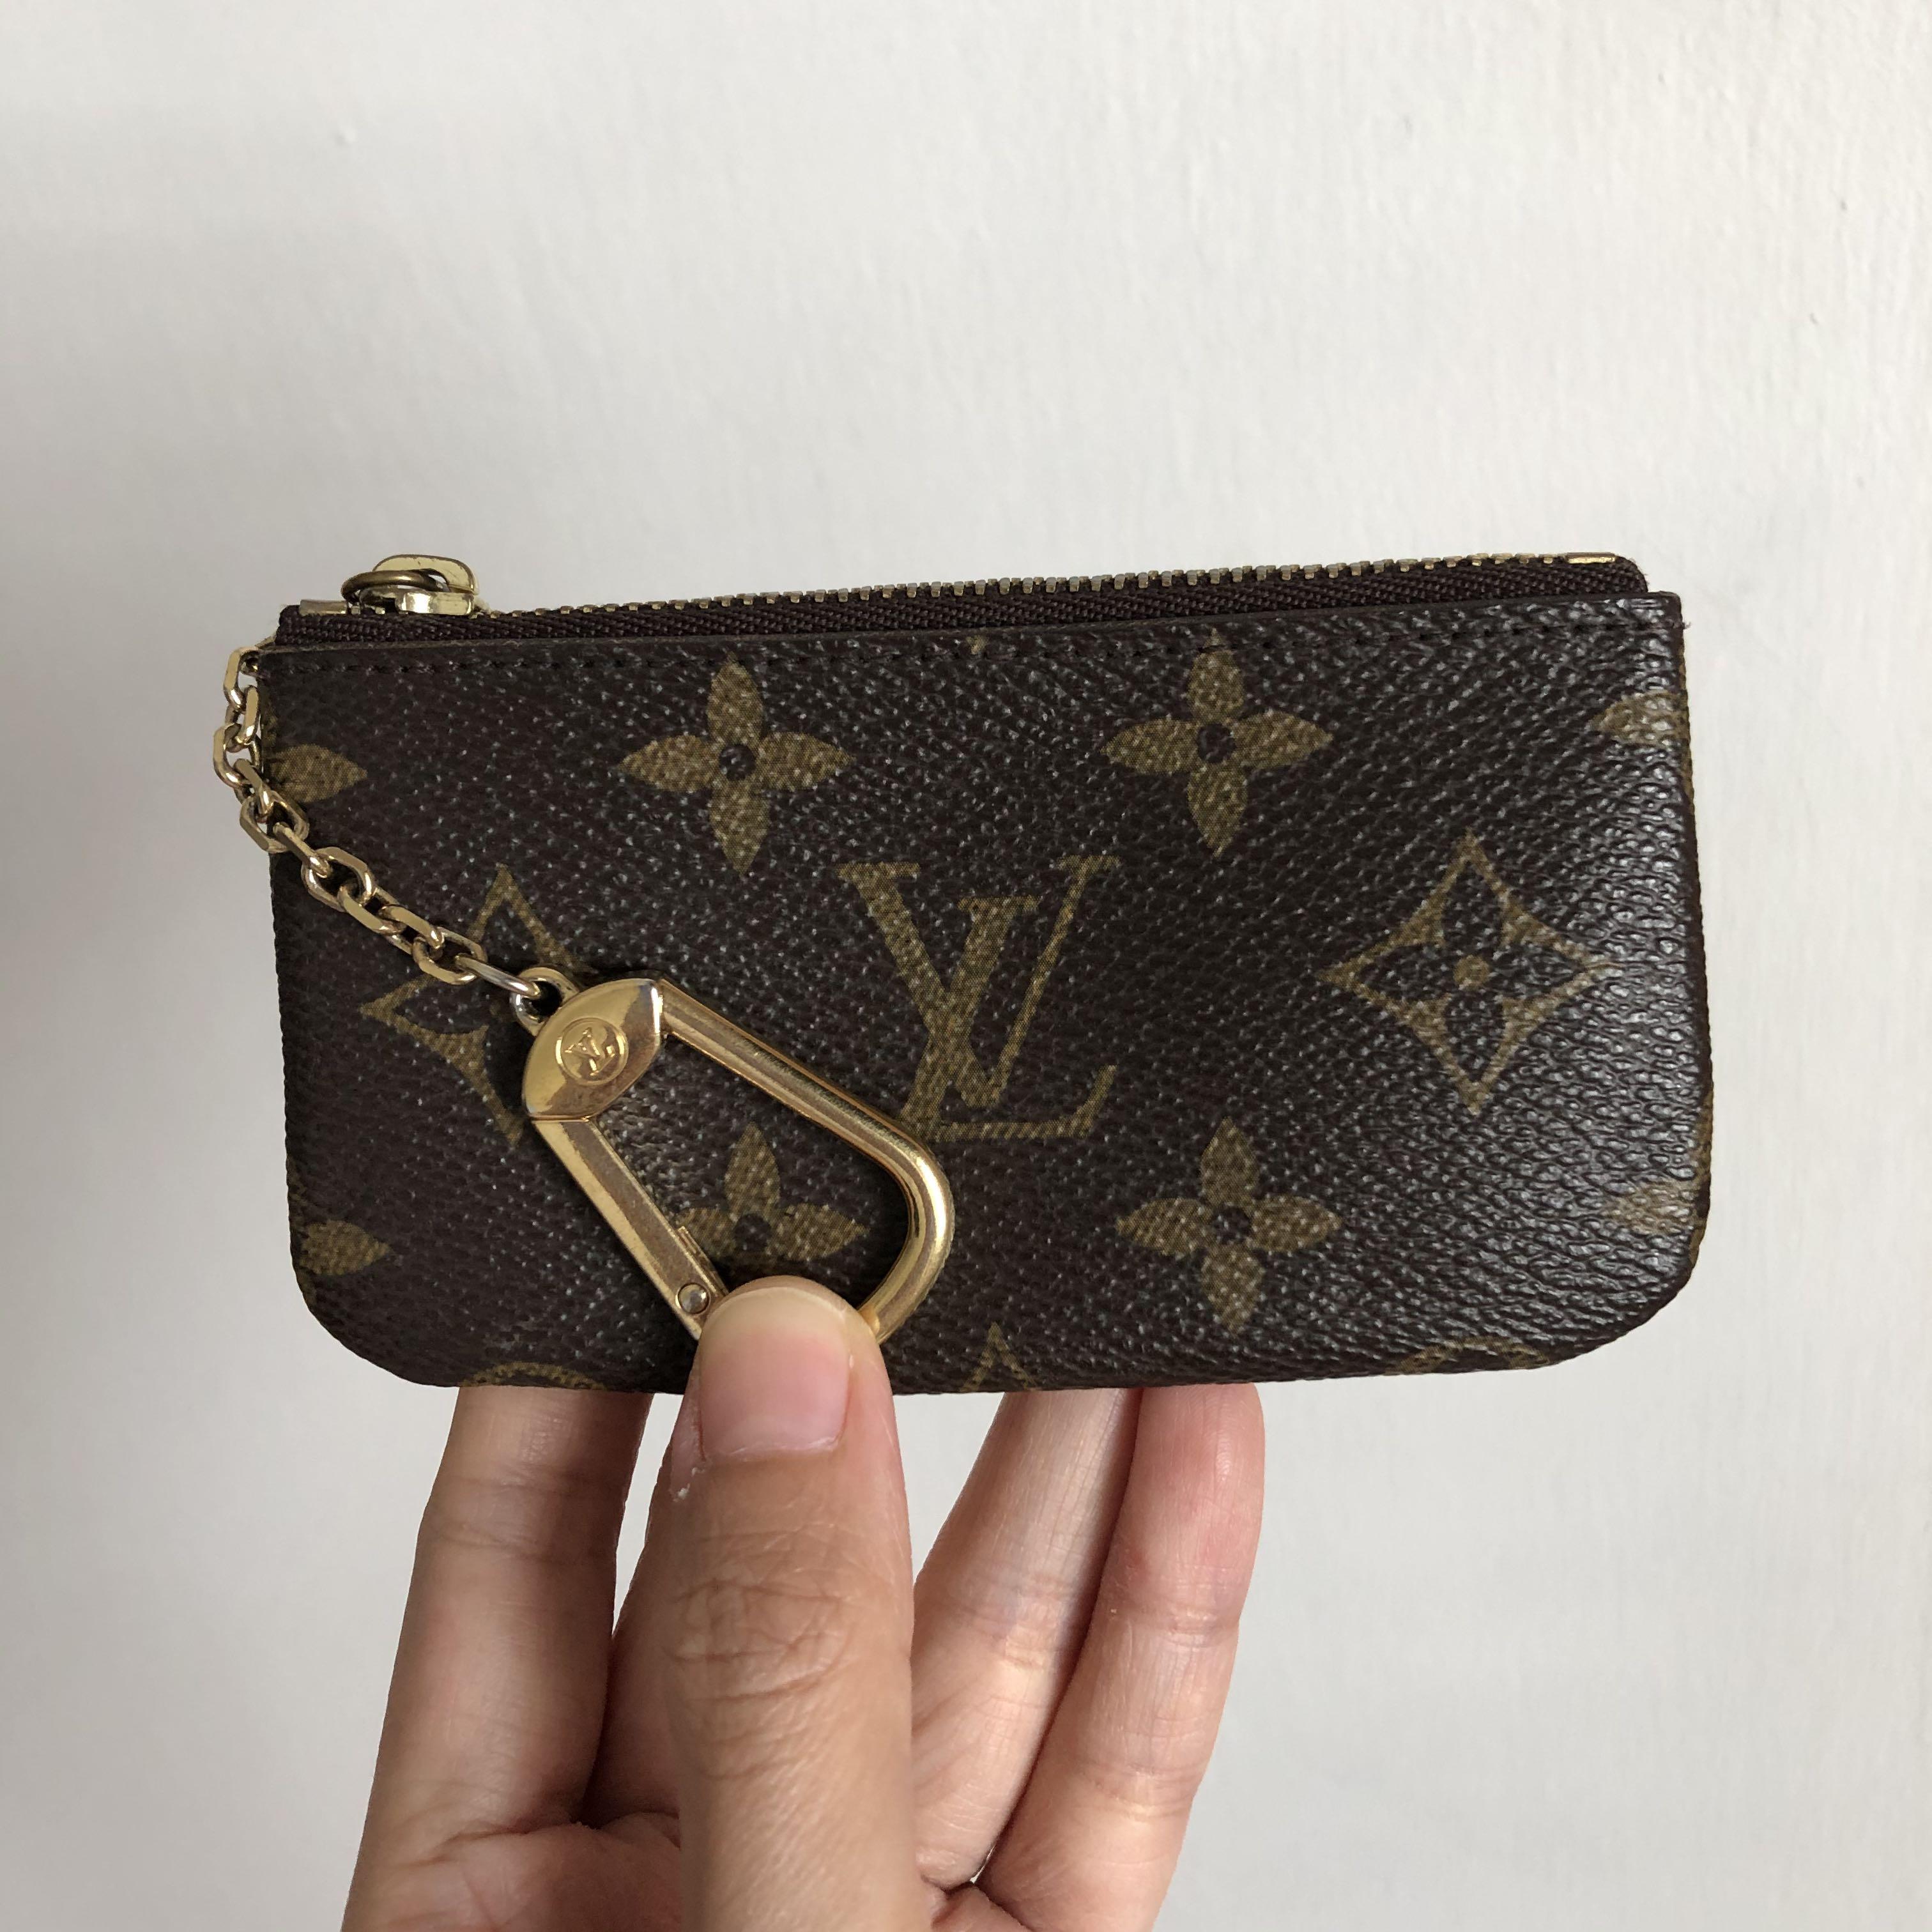 Shop Louis Vuitton Key Pouch (M62650, N62658) by lifeisfun